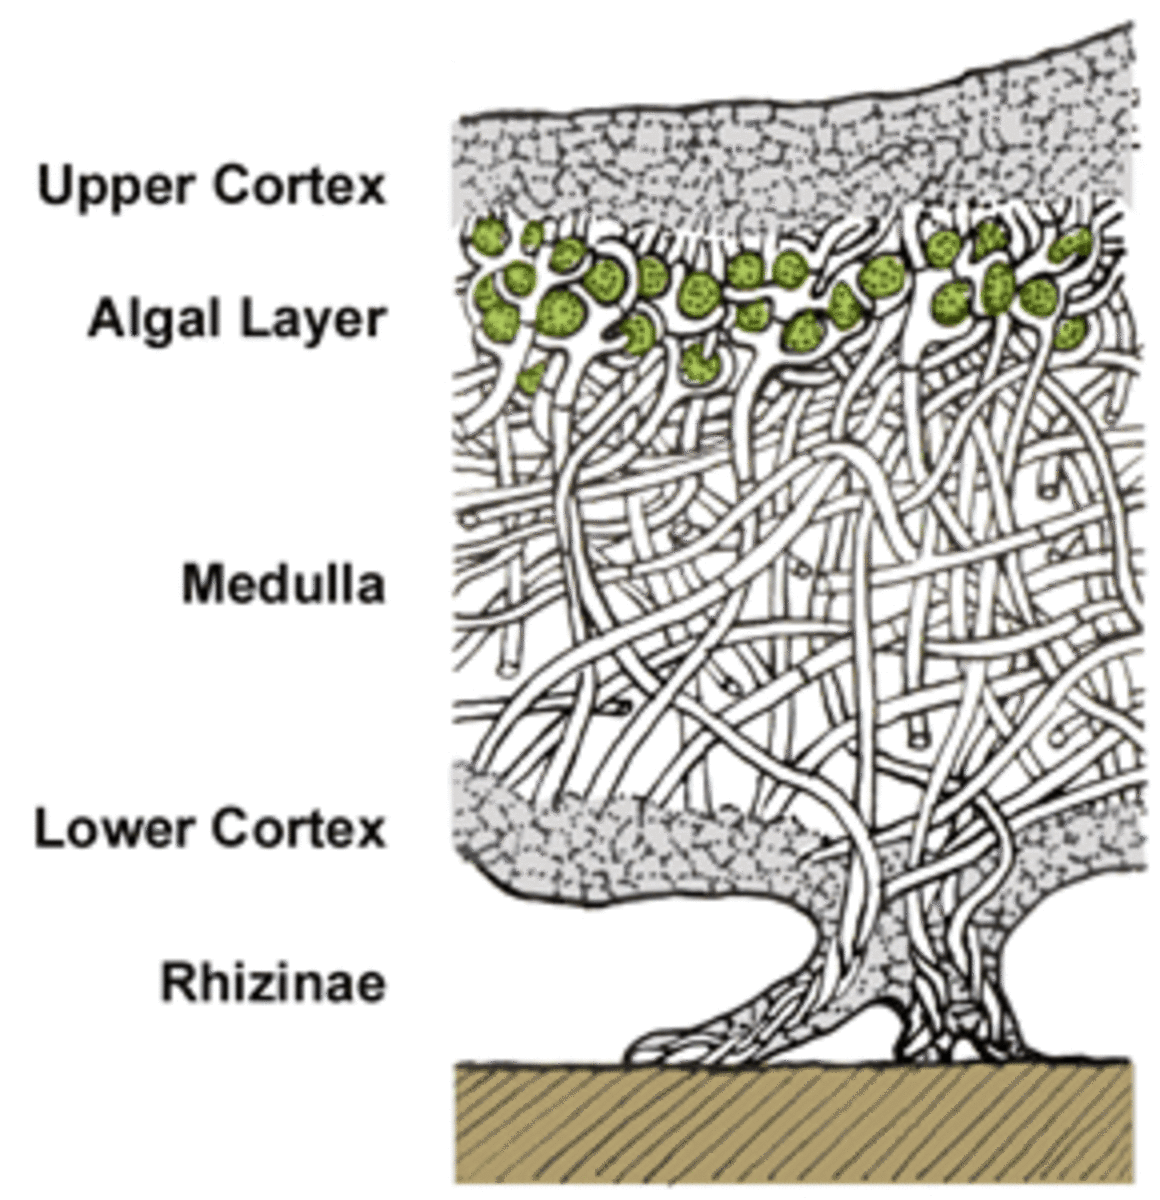 Structure of a lichen tallus.